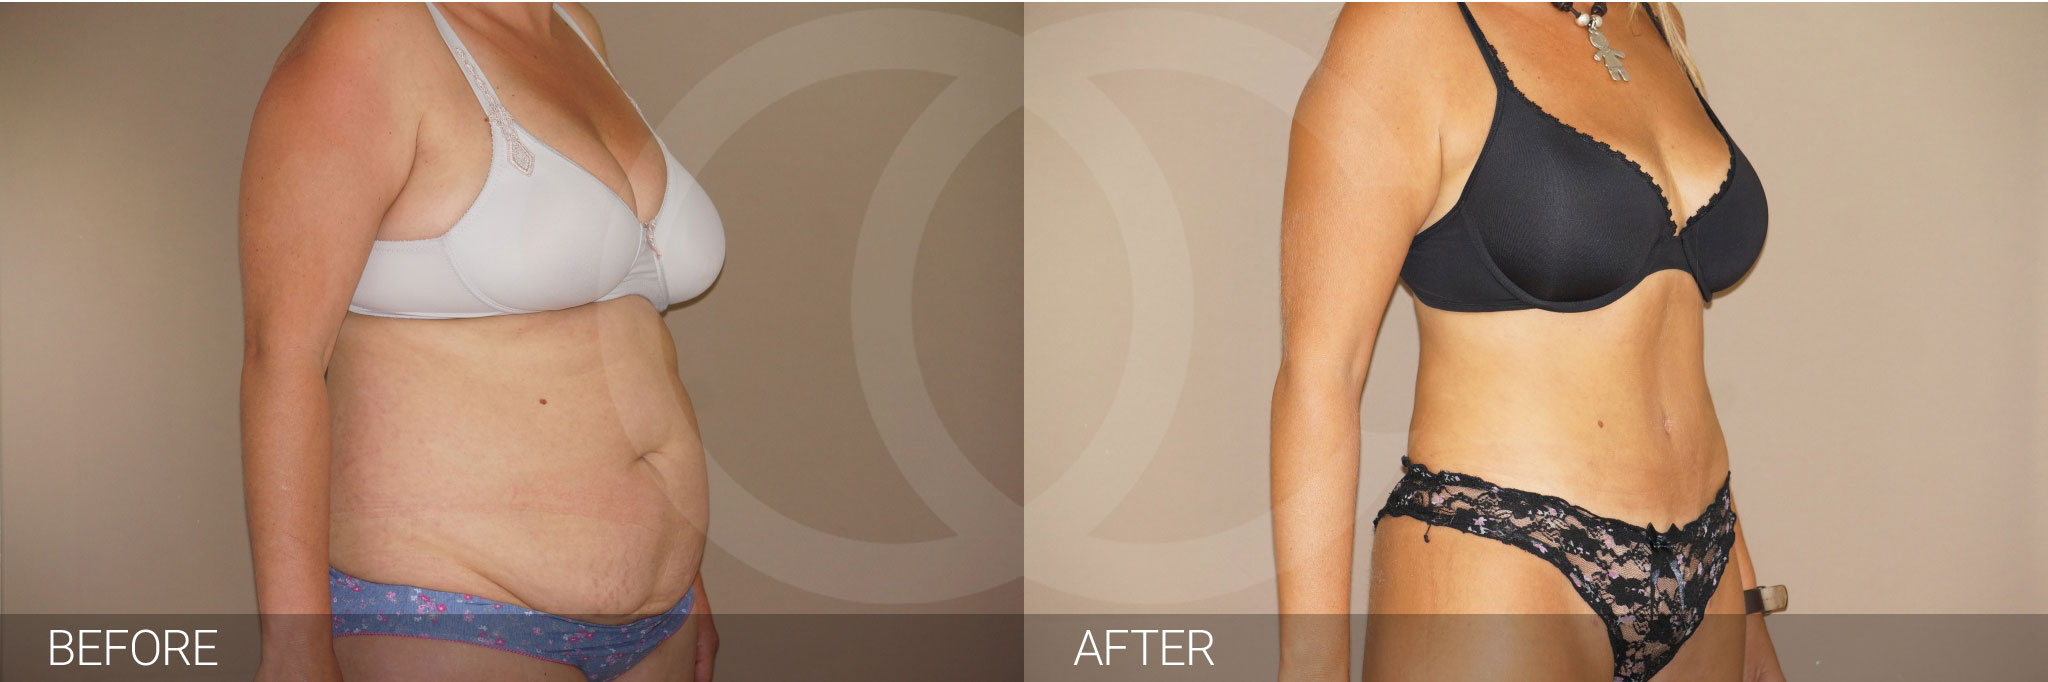 Antes y después Abdominoplastia cirugía de abdomen fotos reales de pacientes 6.3 | Ocean Clinic Marbella Madrid